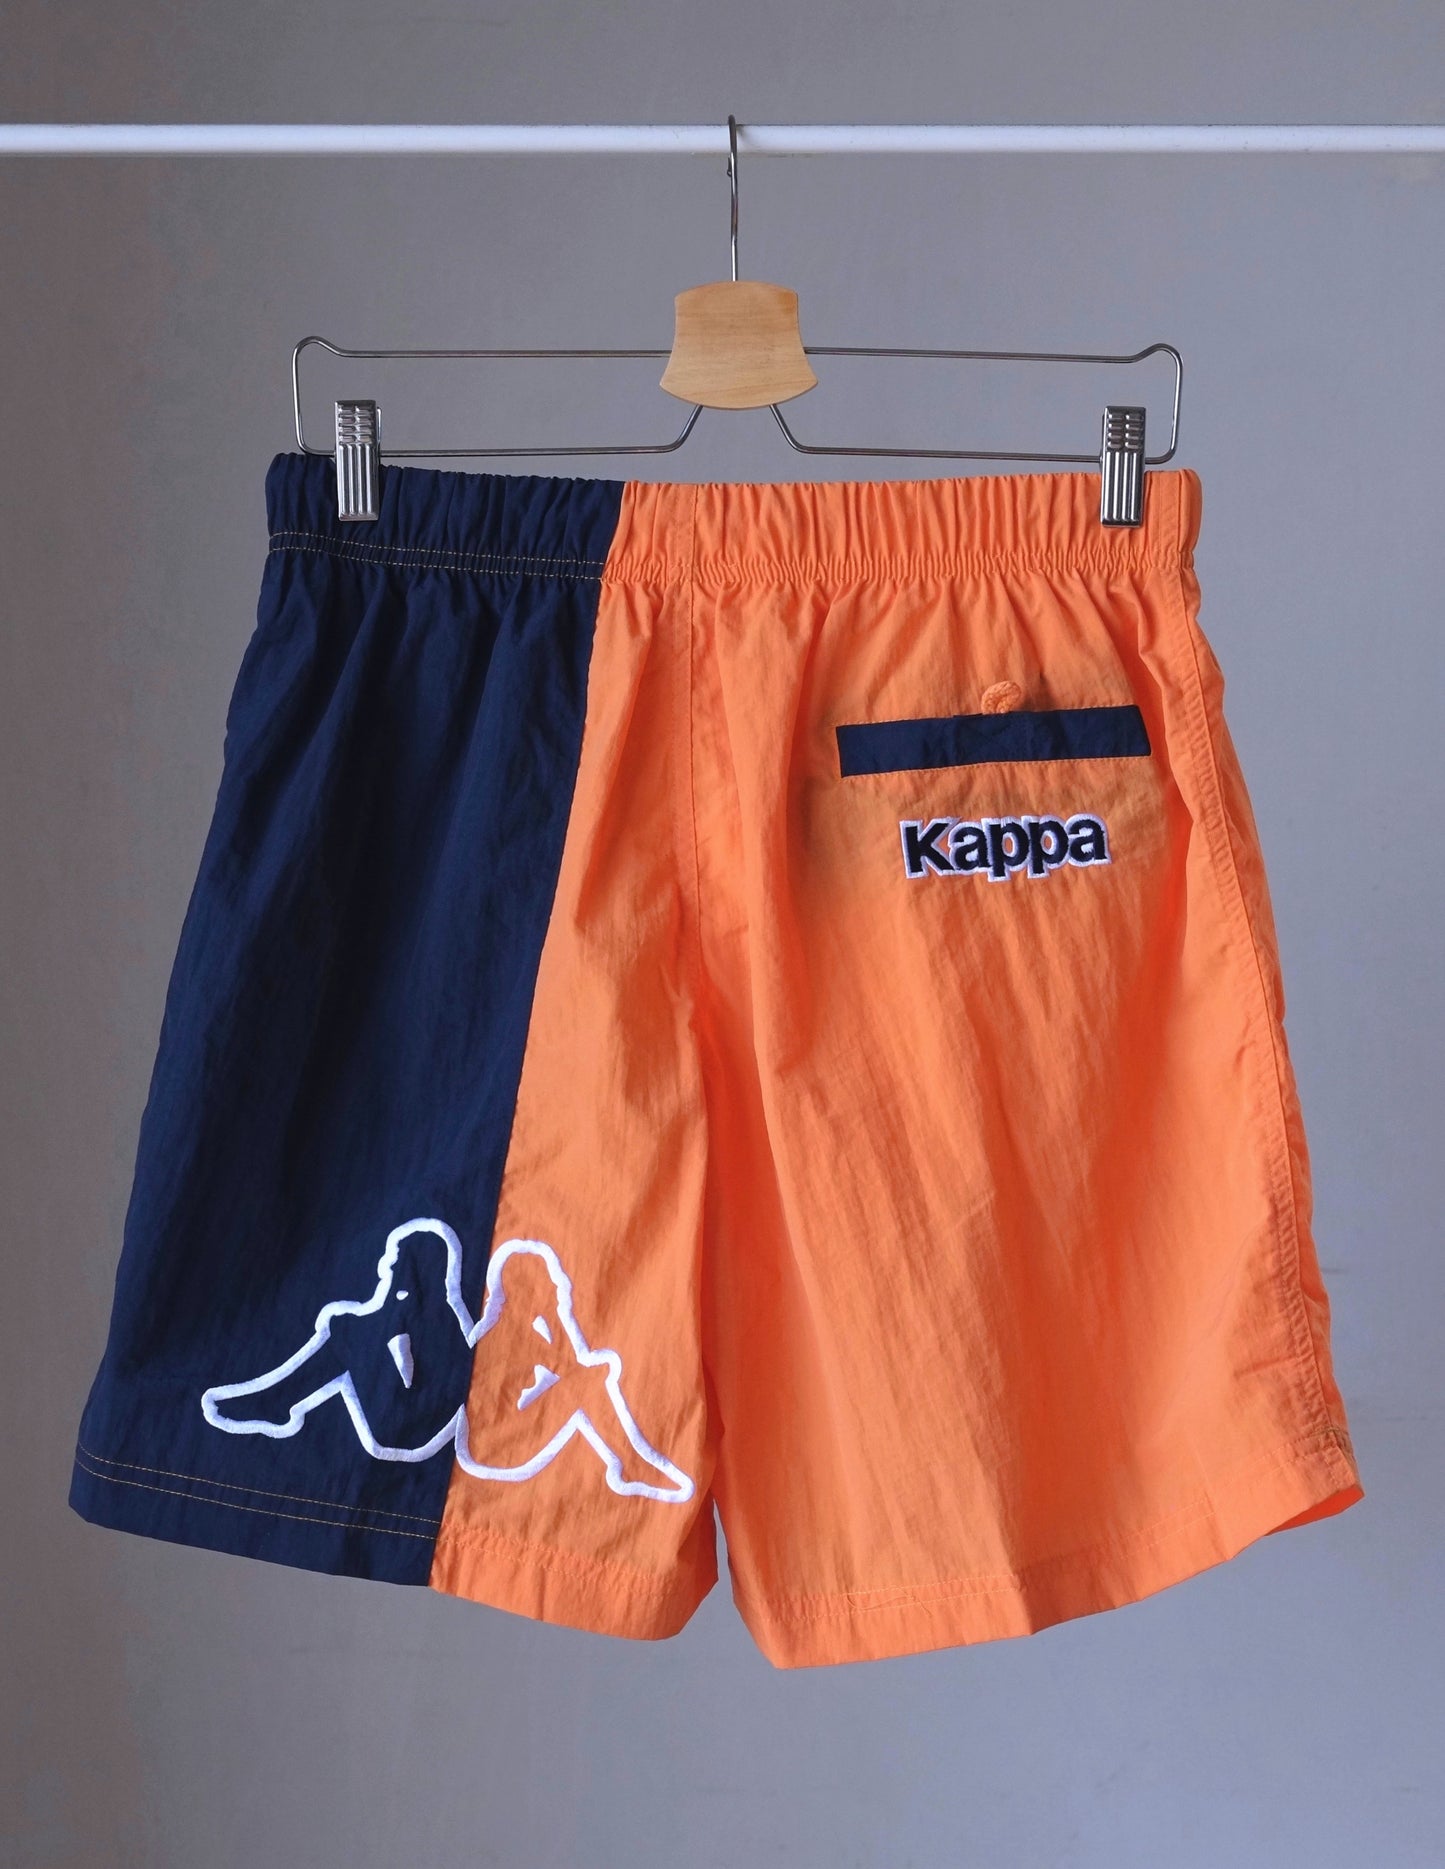 KAPPA Erebus 90's Swim Shorts